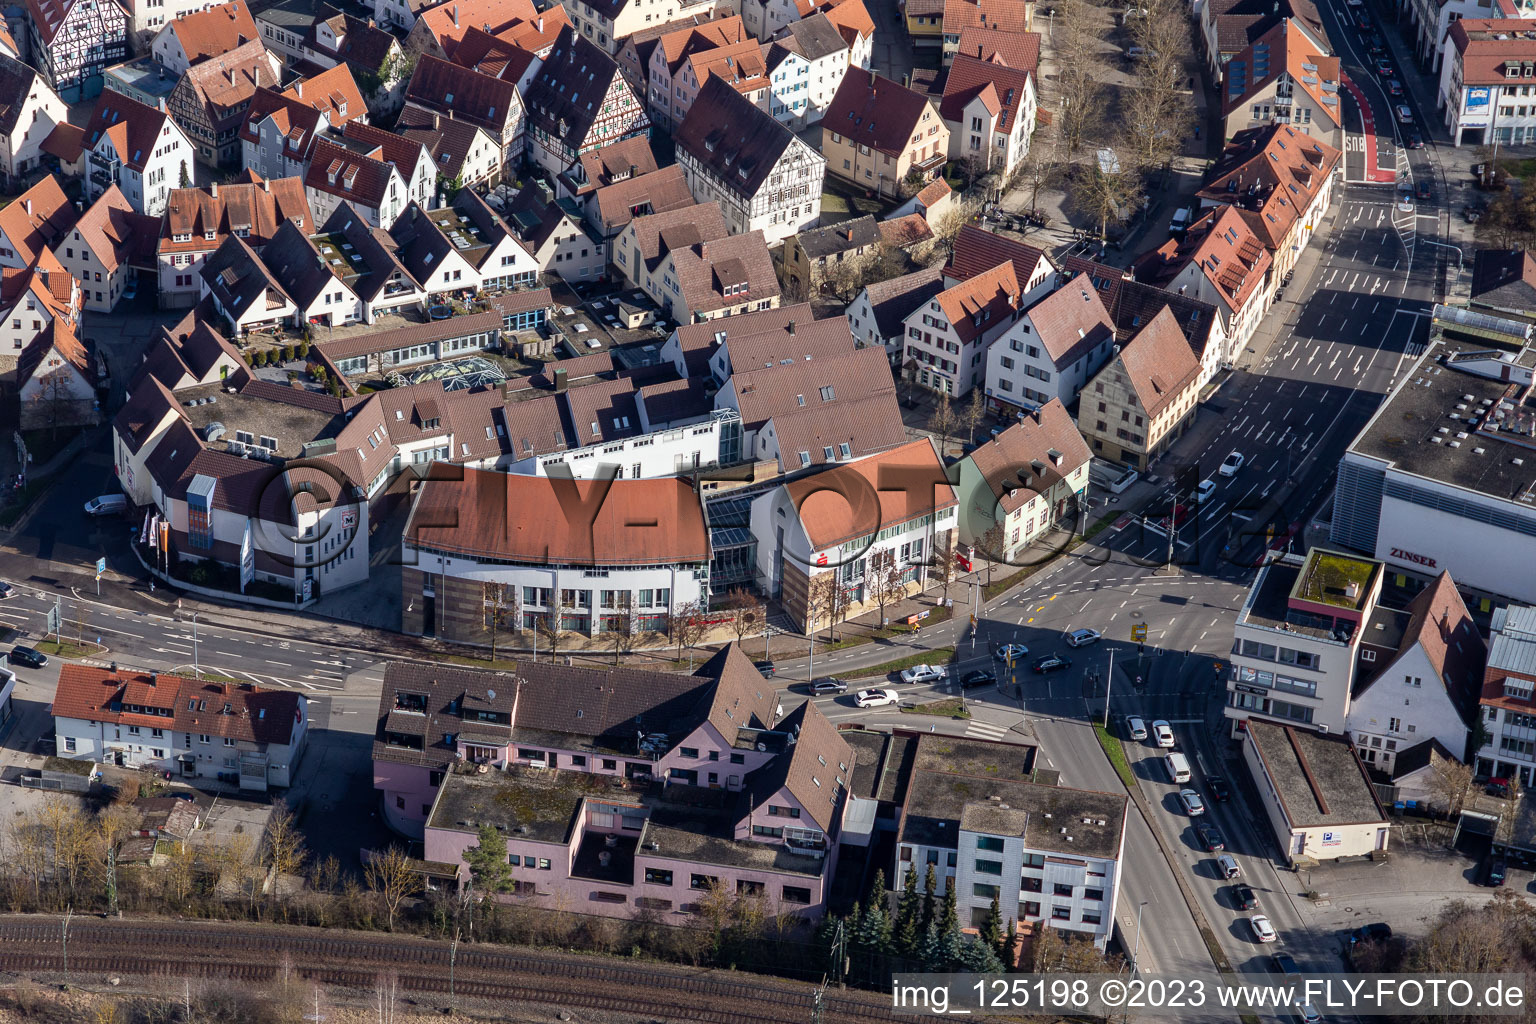 Vue aérienne de Caisse d'épargne du district de Böblingen à Herrenberg dans le département Bade-Wurtemberg, Allemagne